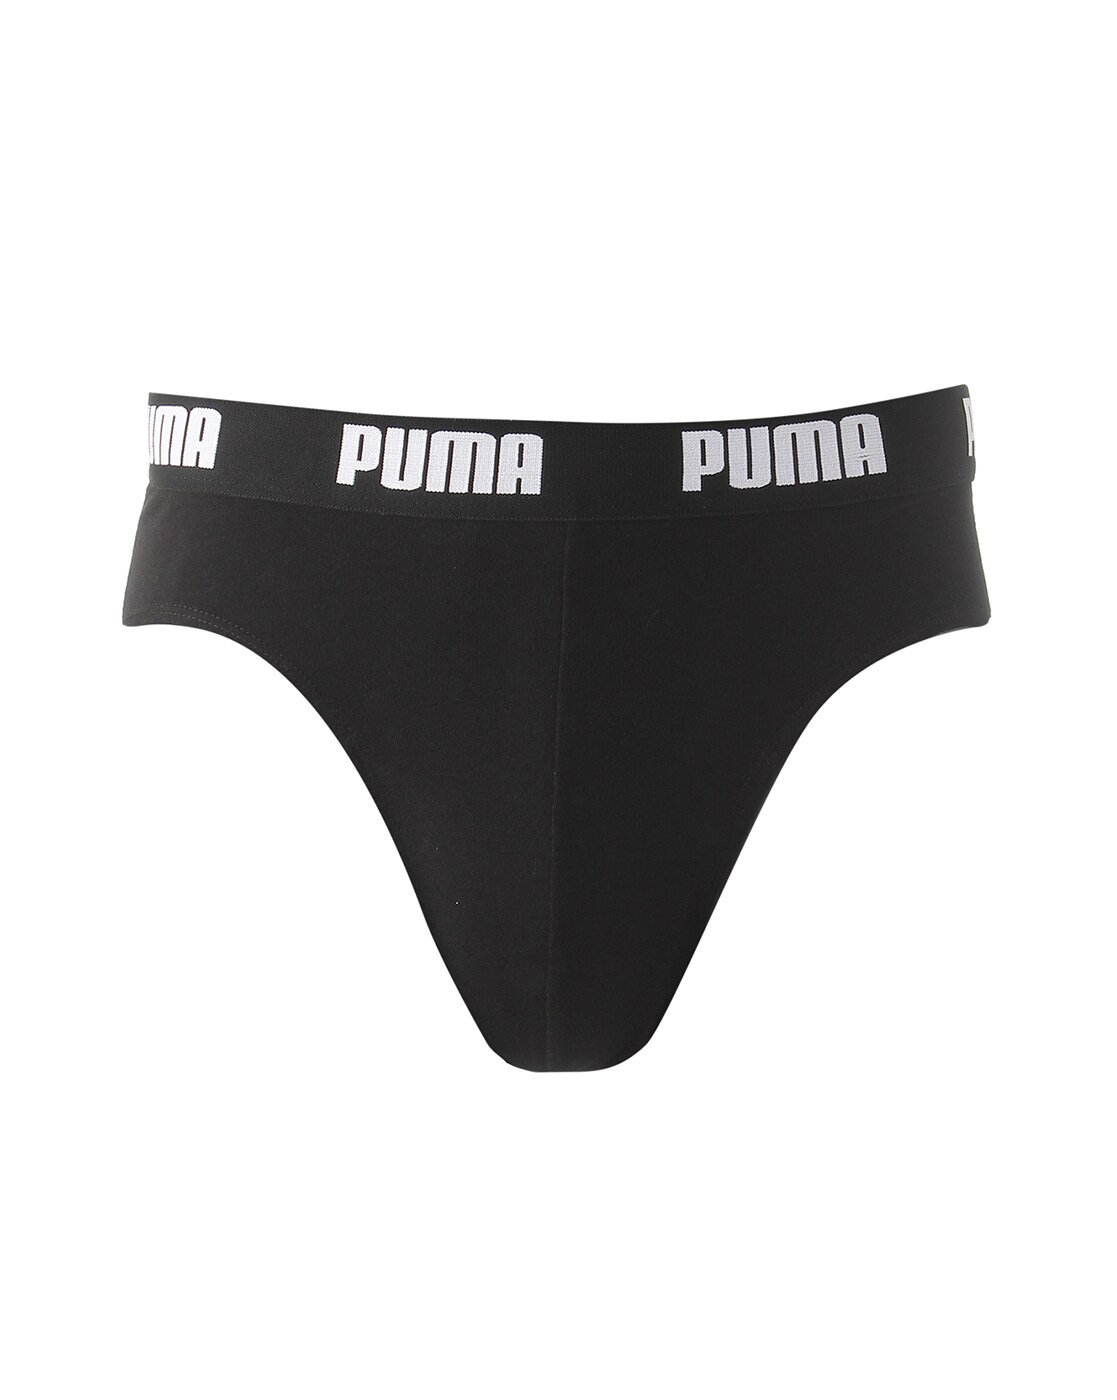 Puma Underwear Men